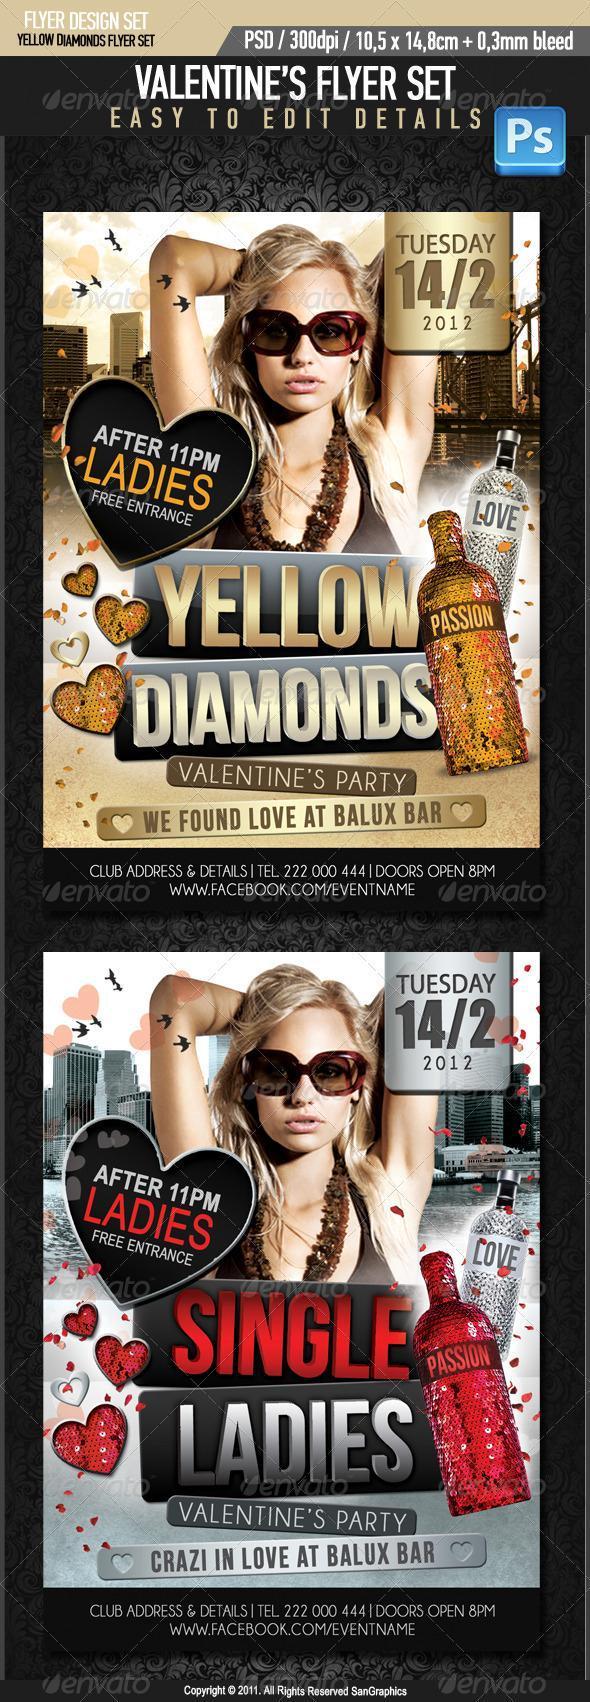 Yellow Diamonds Party Flyer Valentines